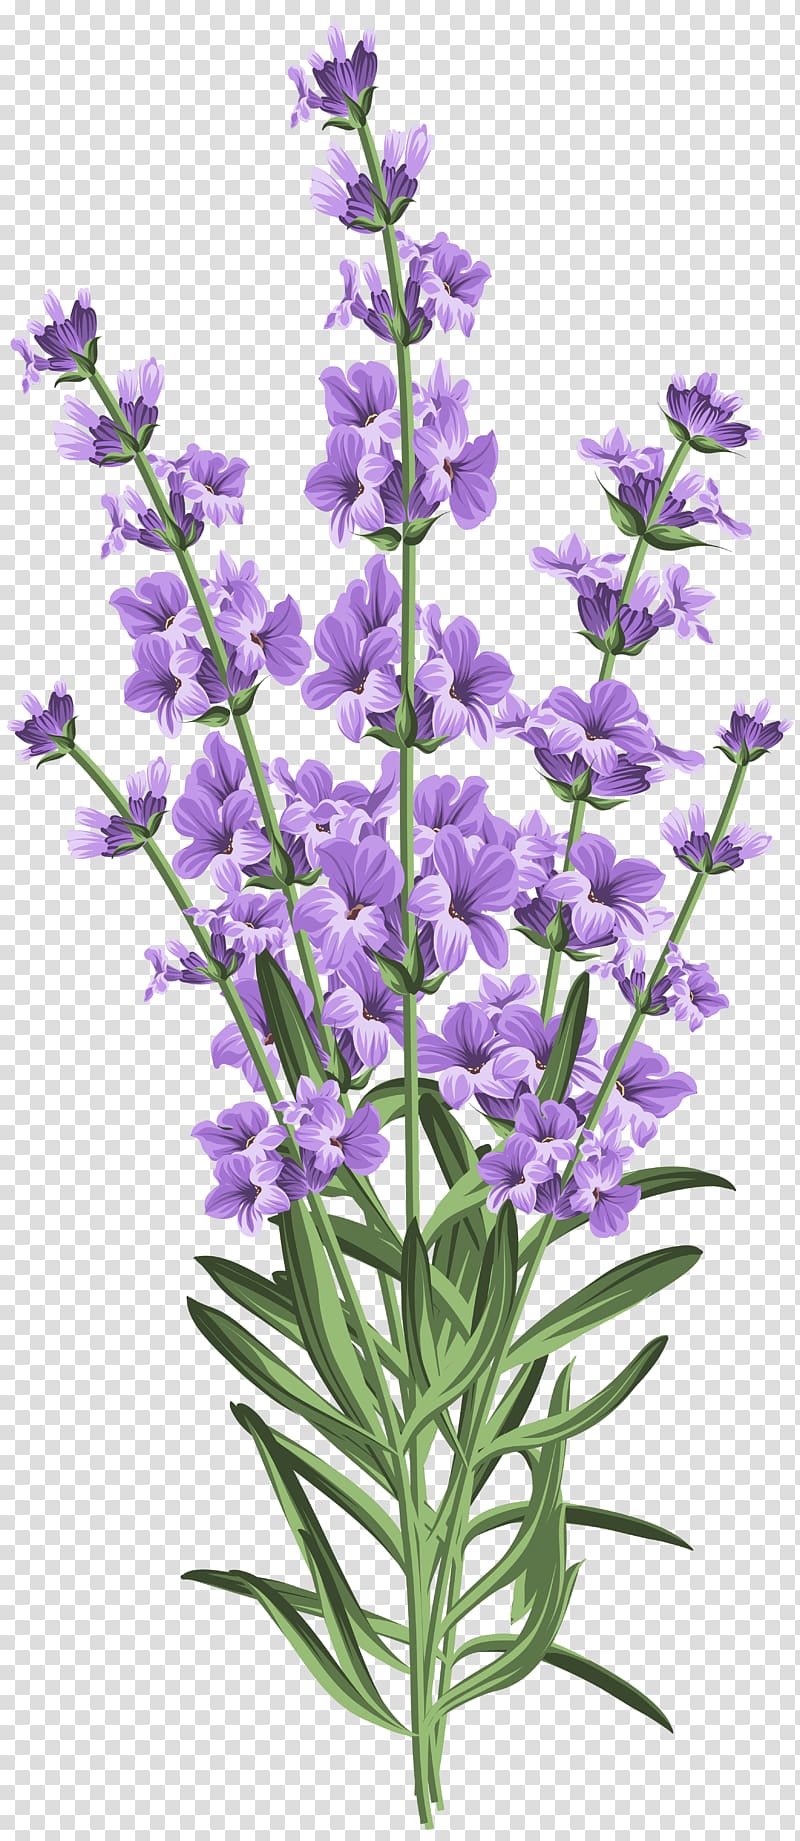 Lavender Wedding invitation Flower , lavender transparent background PNG clipart